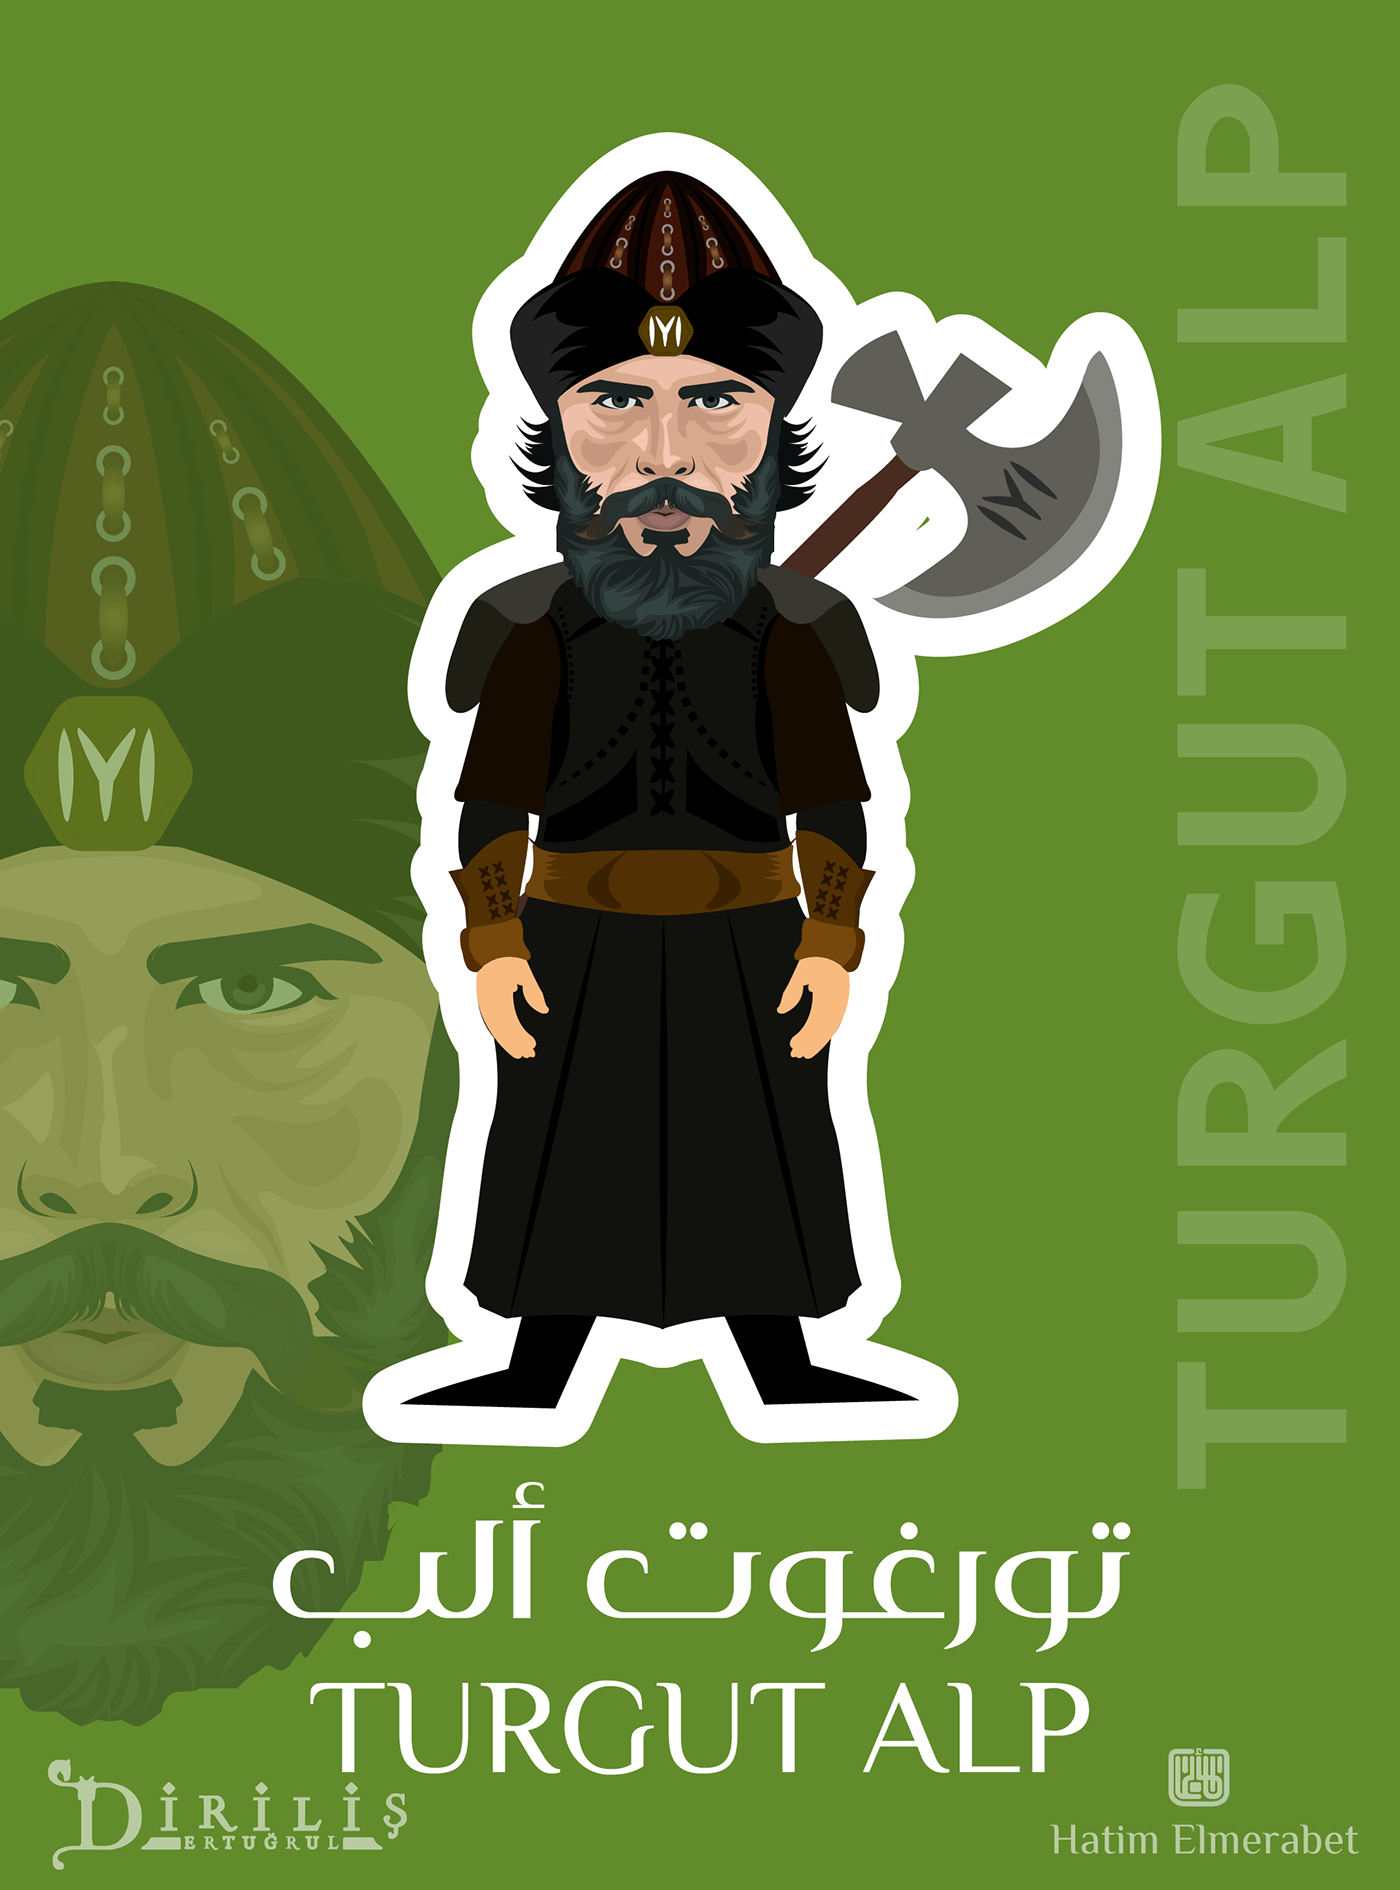 Diriliş Ertuğrul characters, caricature and vector art